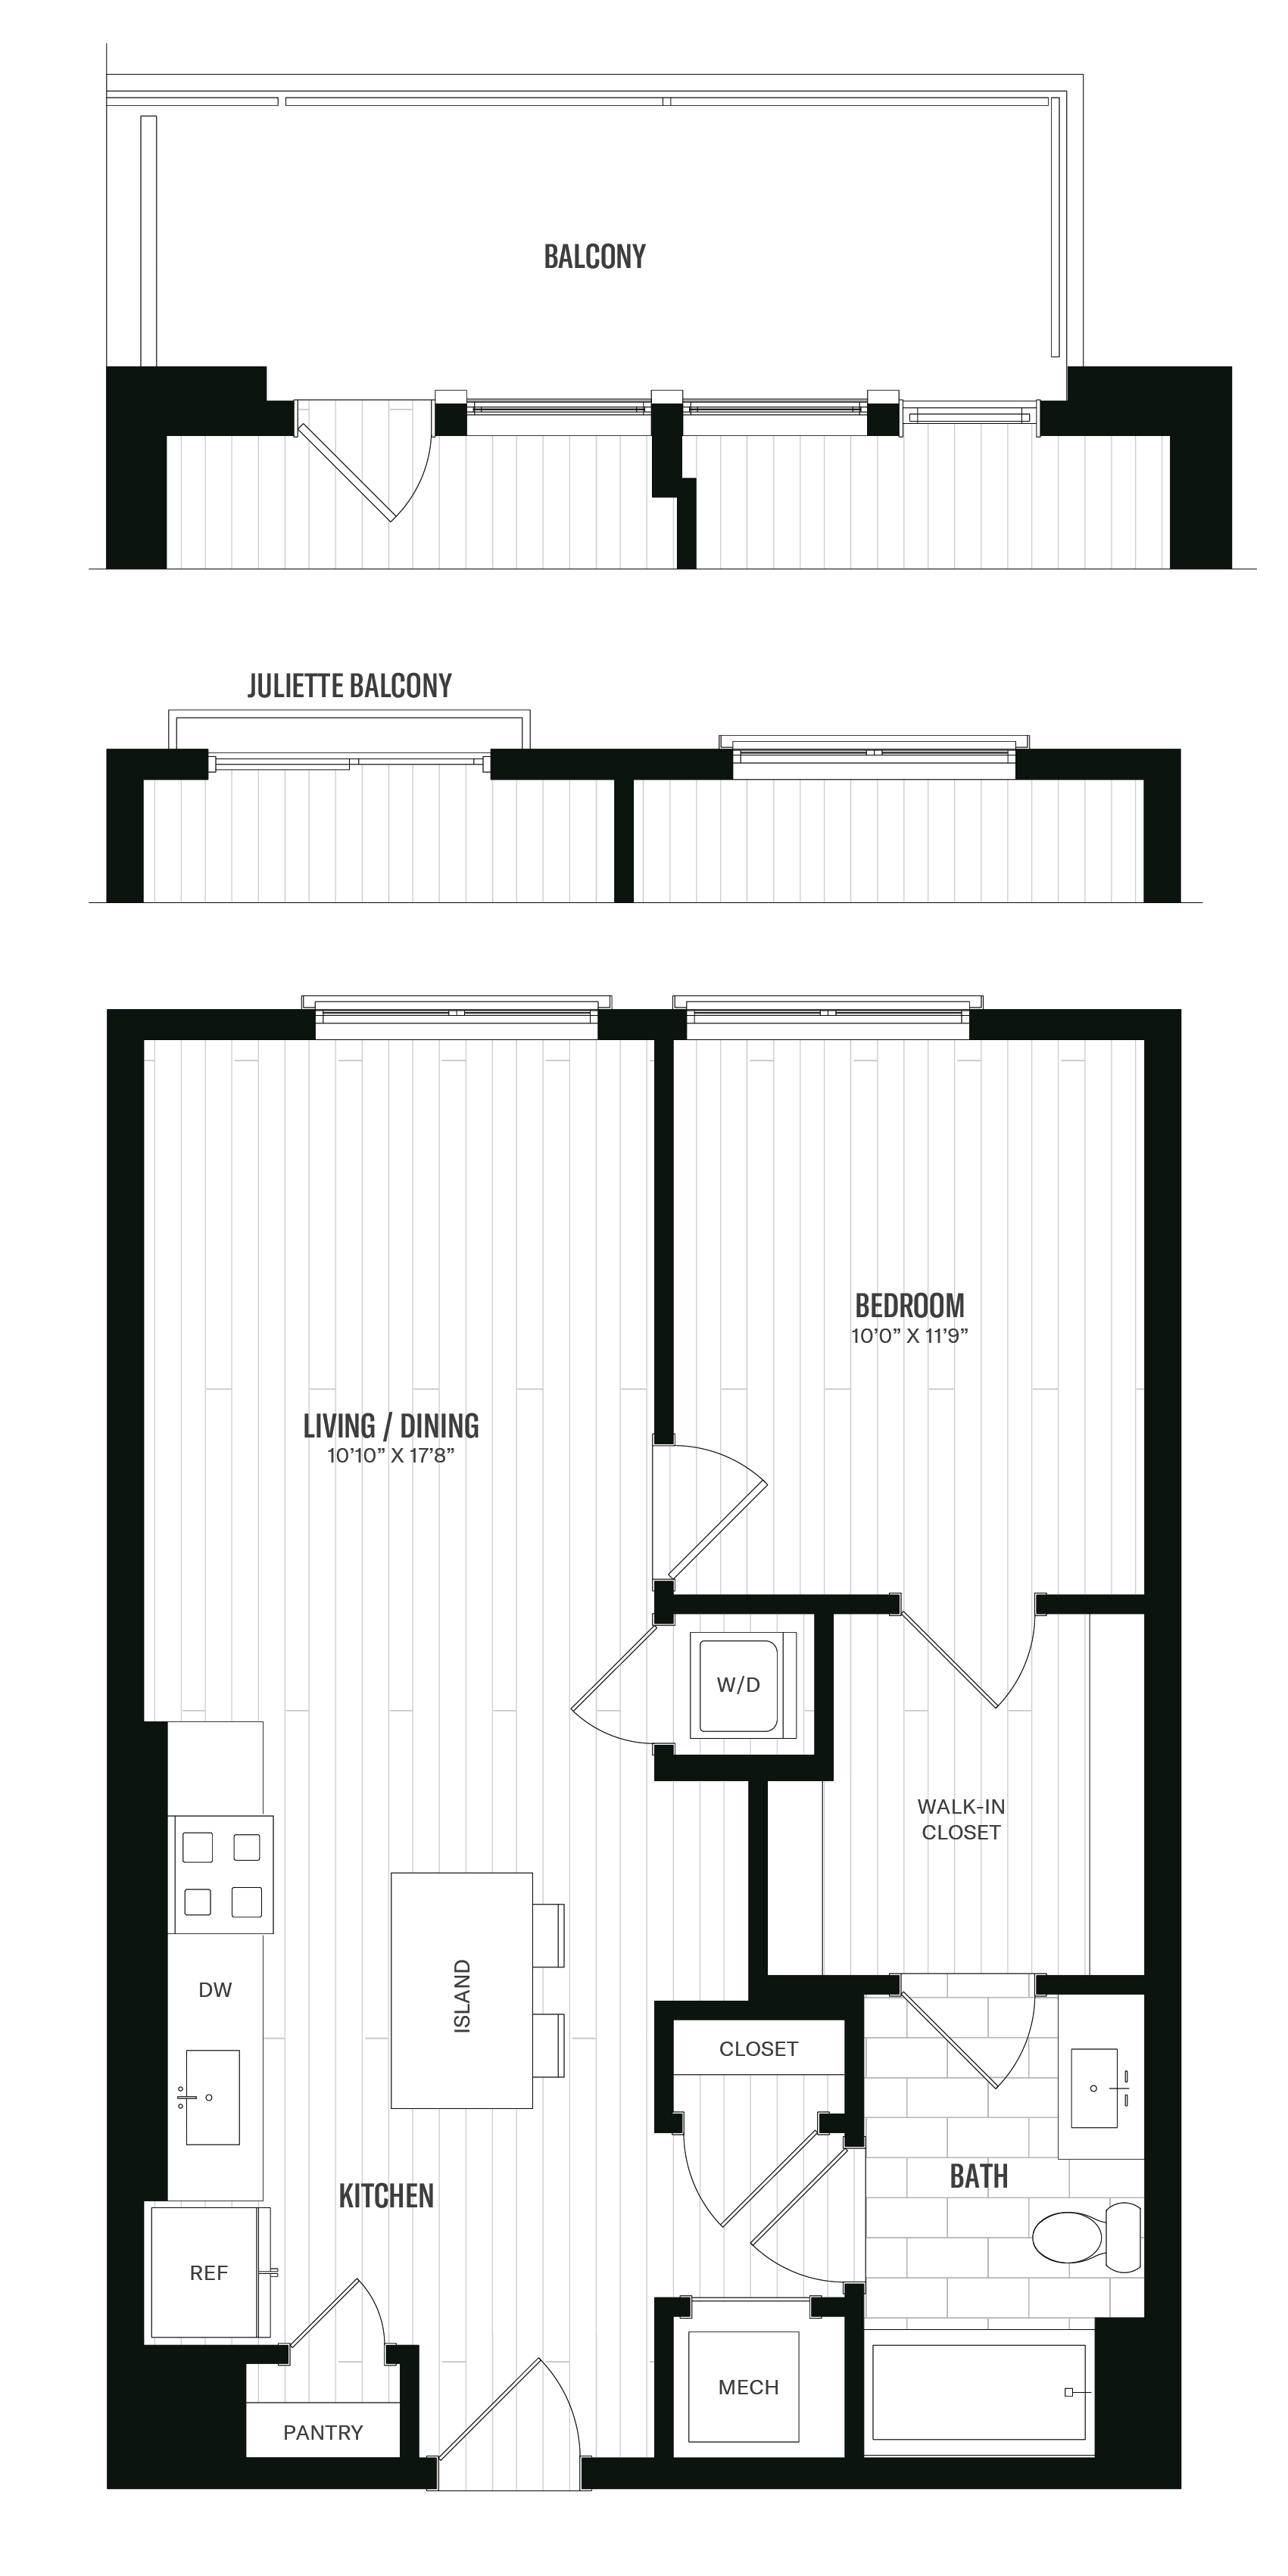 Floorplan image of unit 628